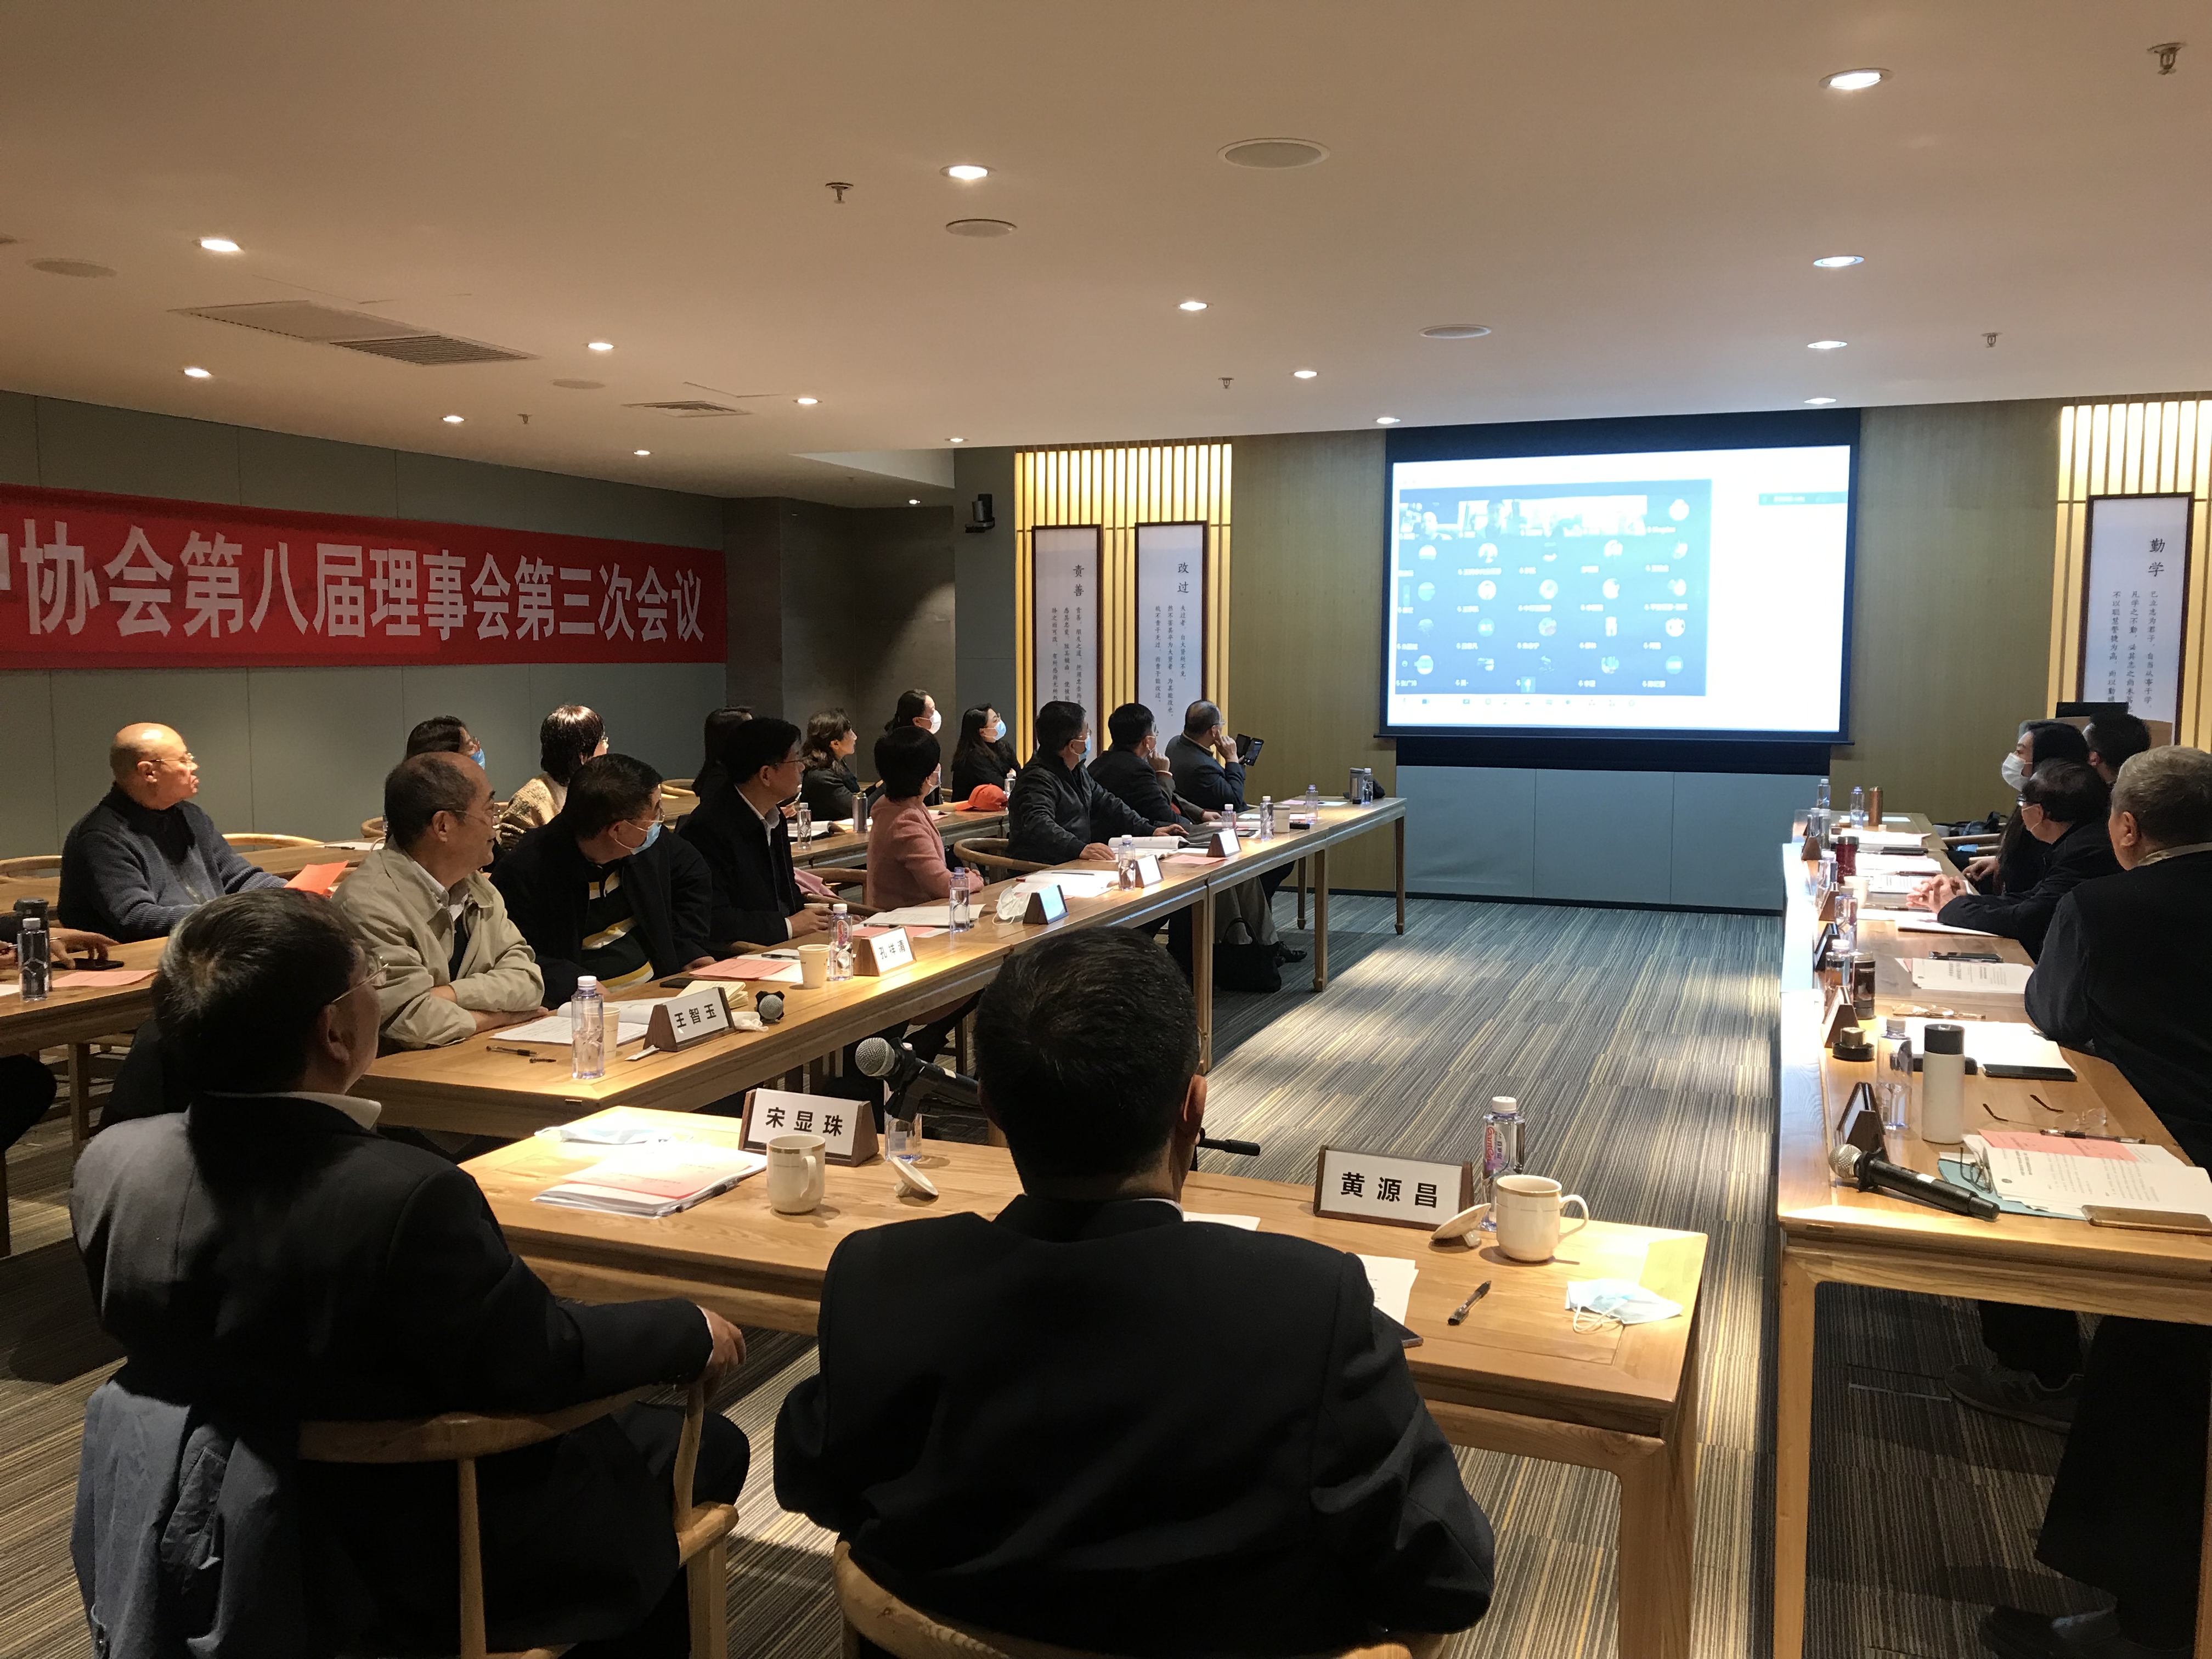  中国计算机用户协会召开第八届理事会第三次会议 